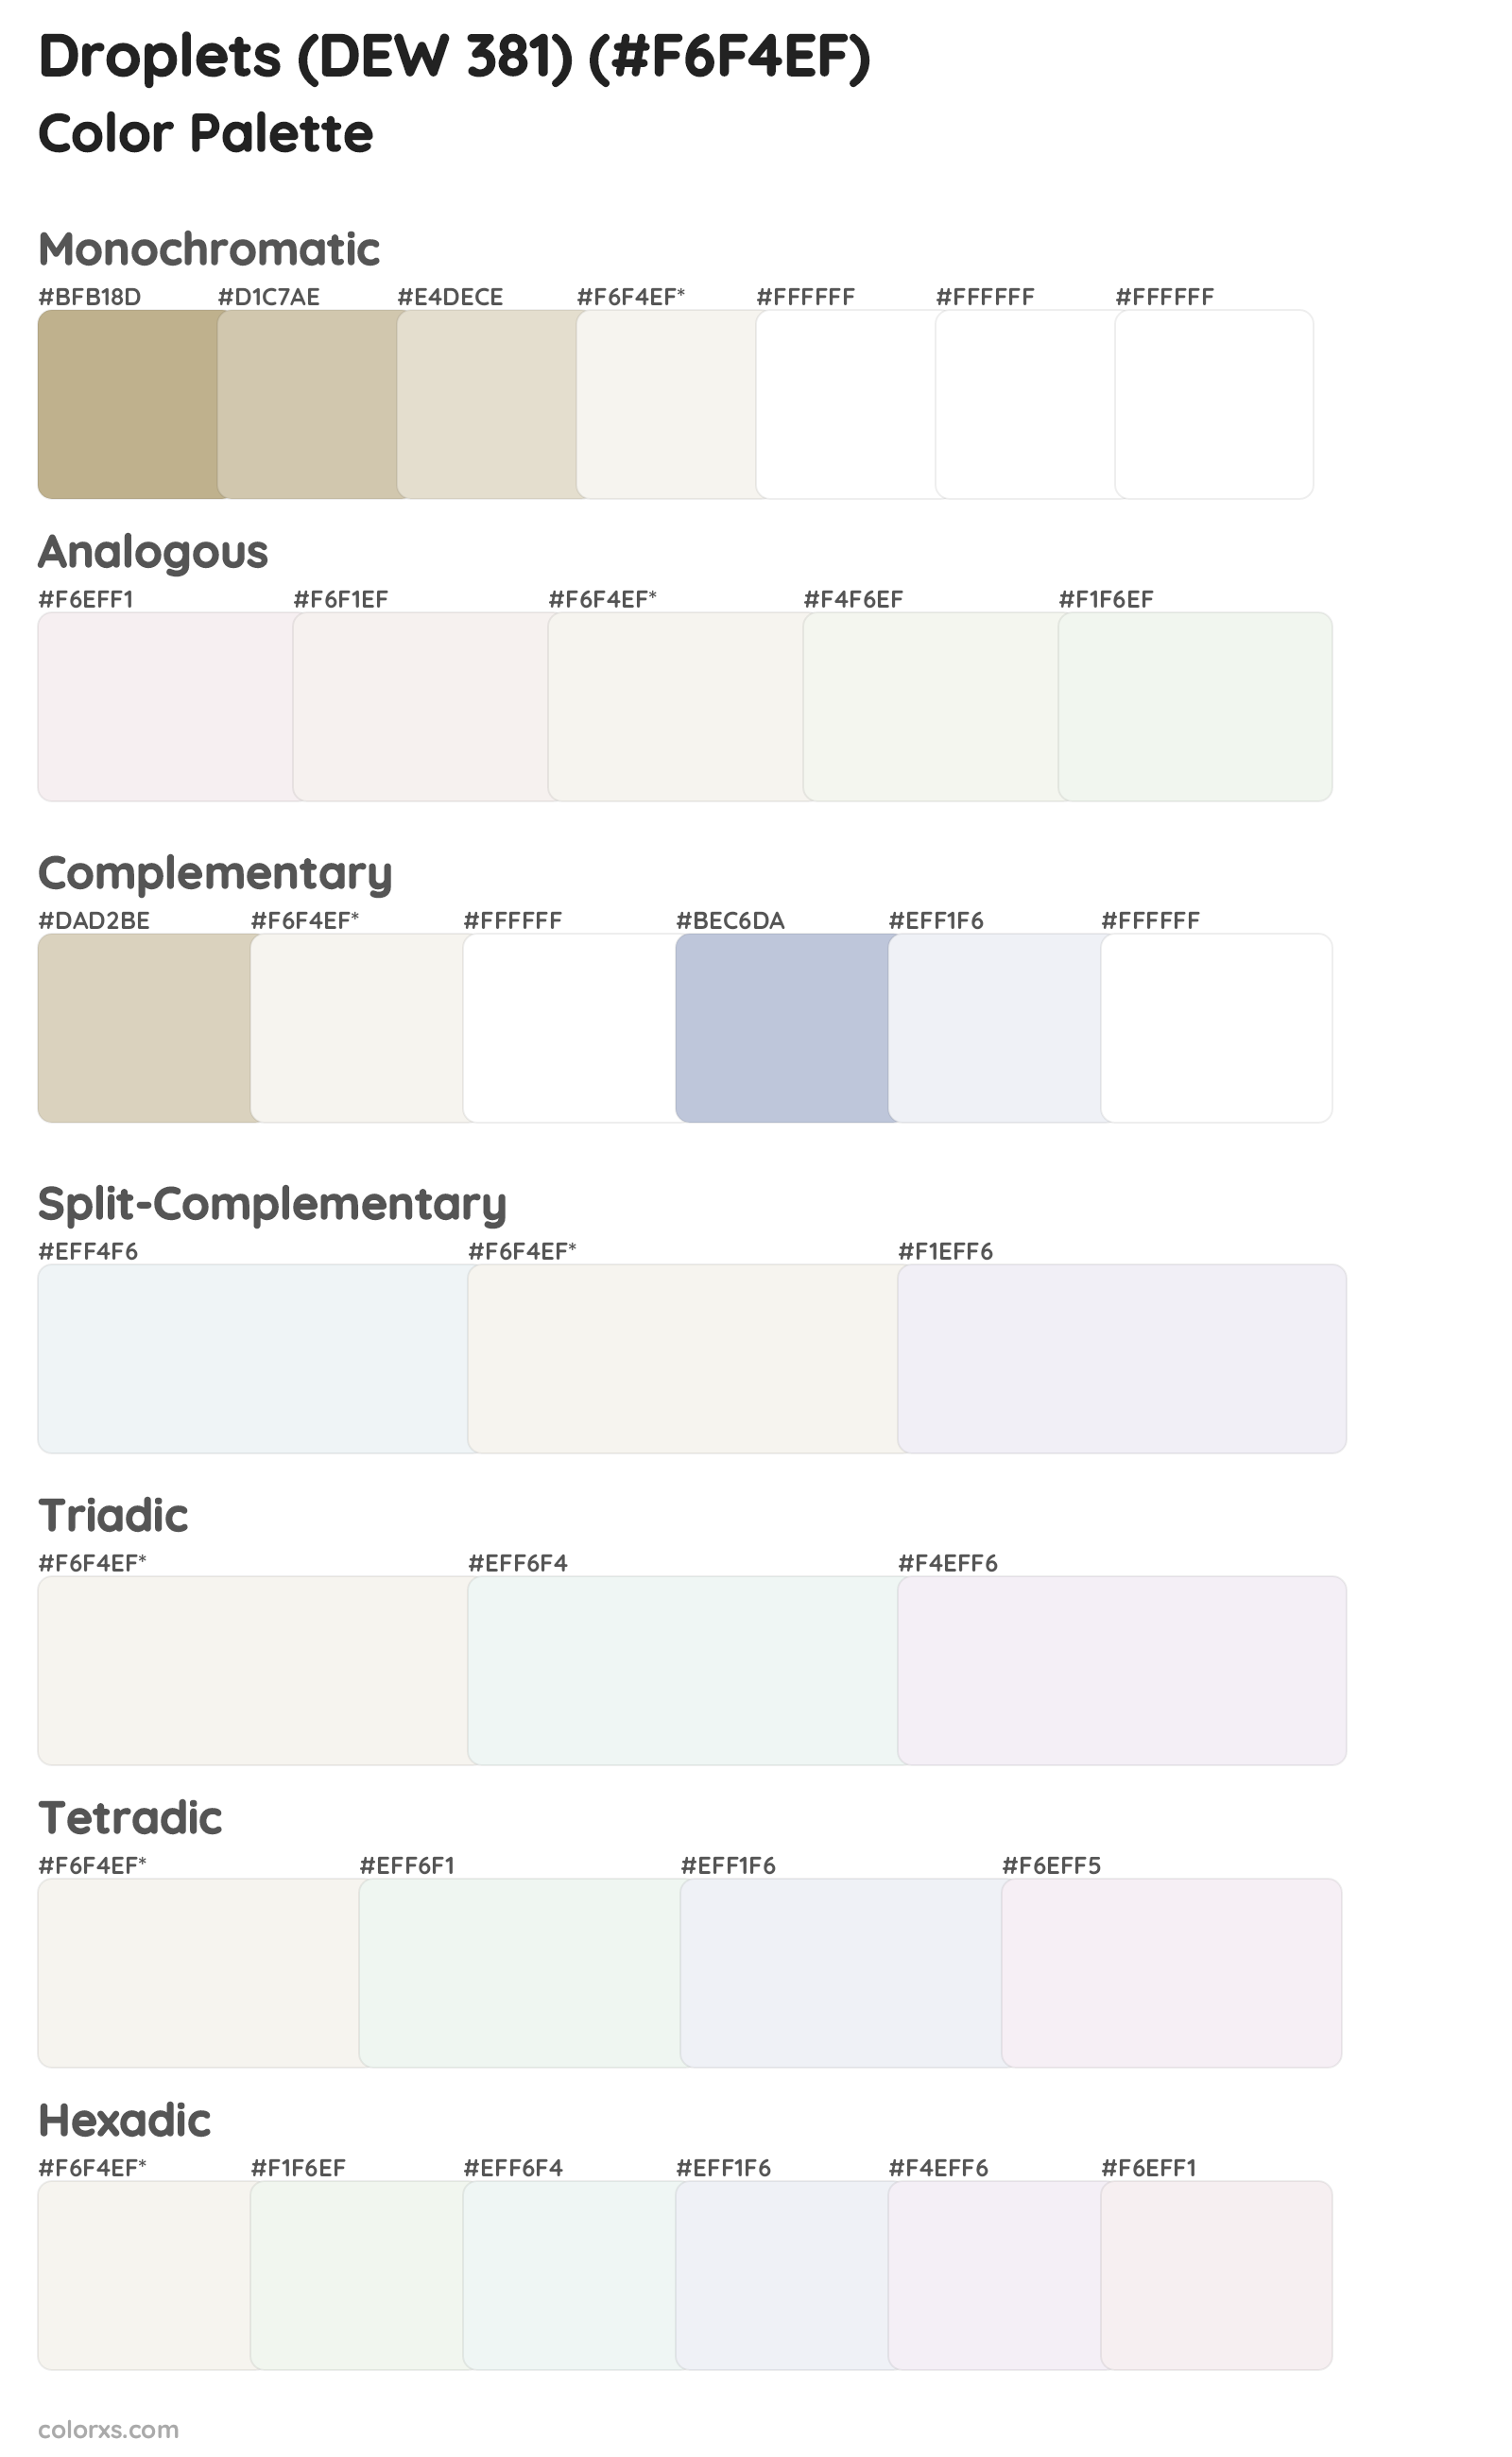 Droplets (DEW 381) Color Scheme Palettes